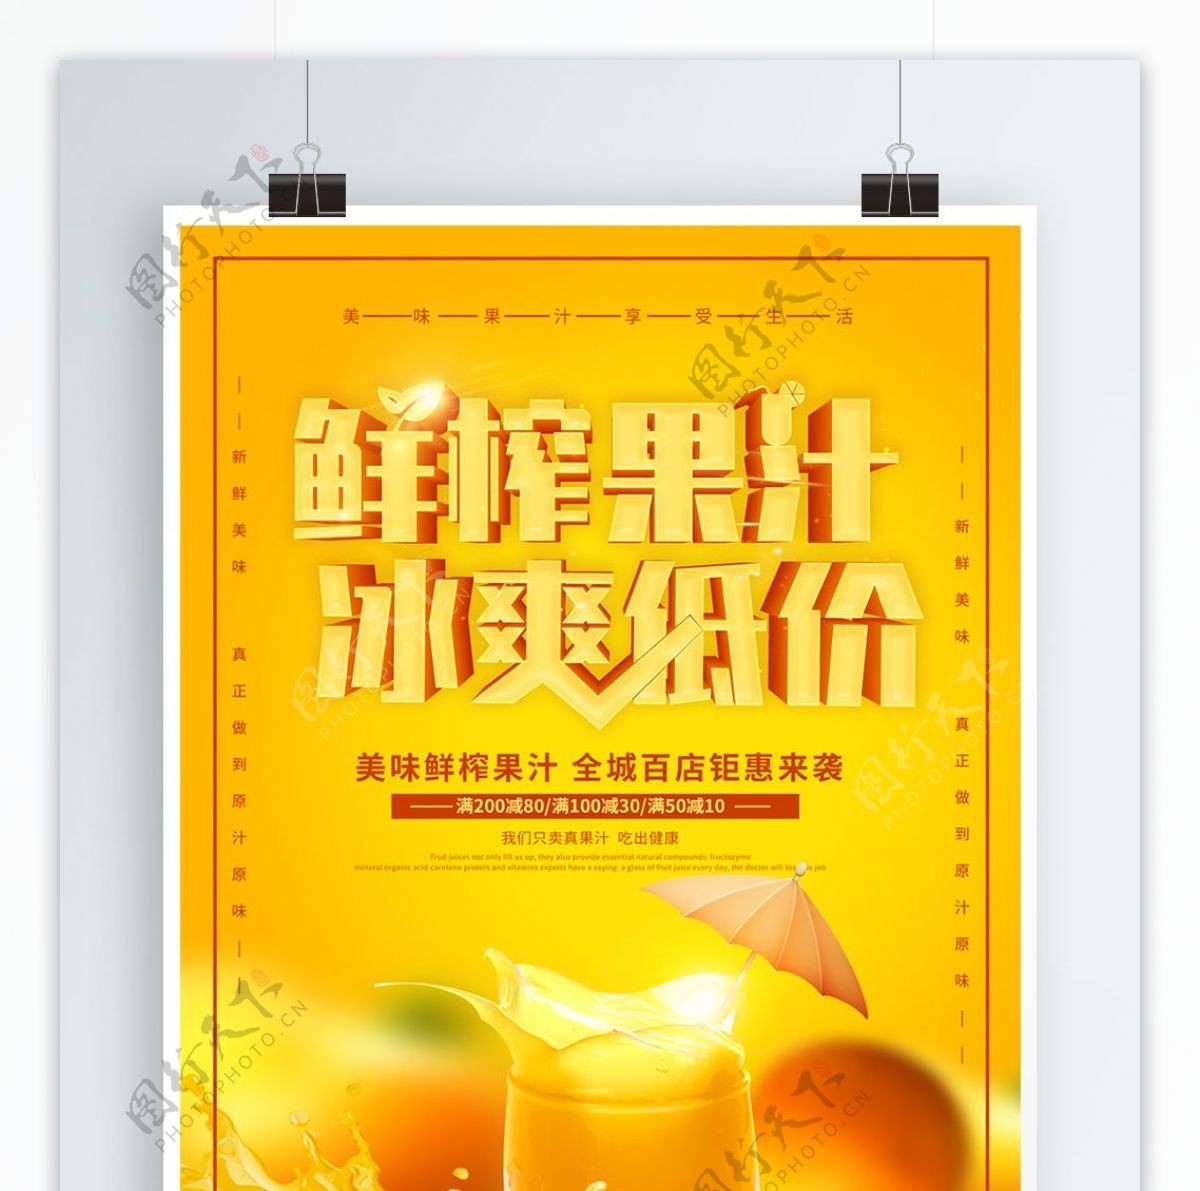 橙色创意鲜榨果汁冰爽低价水果促销海报